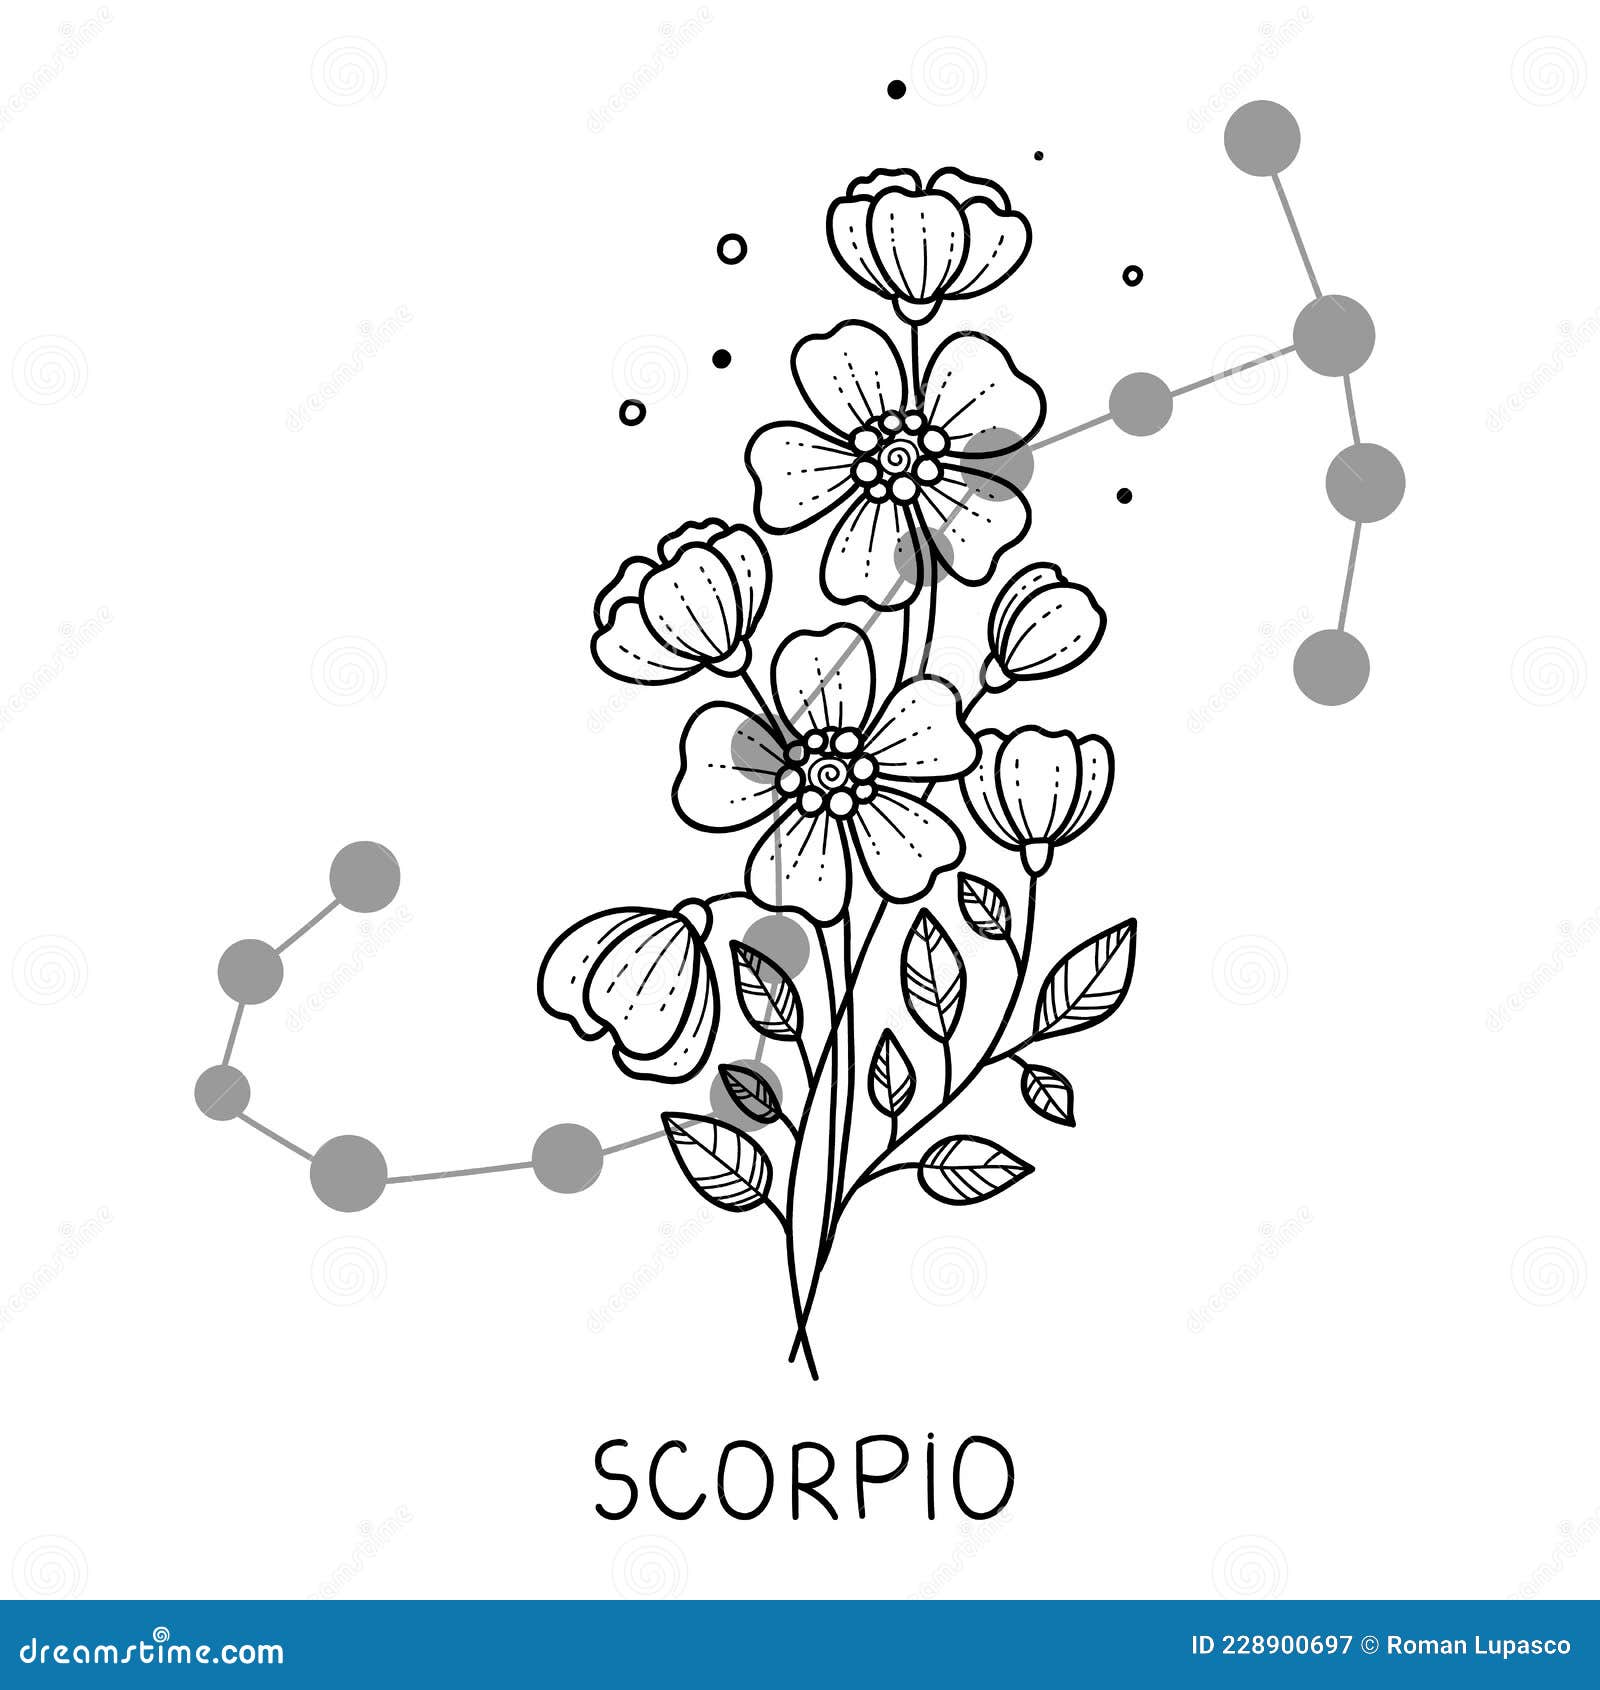 Birth Flower Tattoo Ideas for Every Zodiac Sign  Hypebae